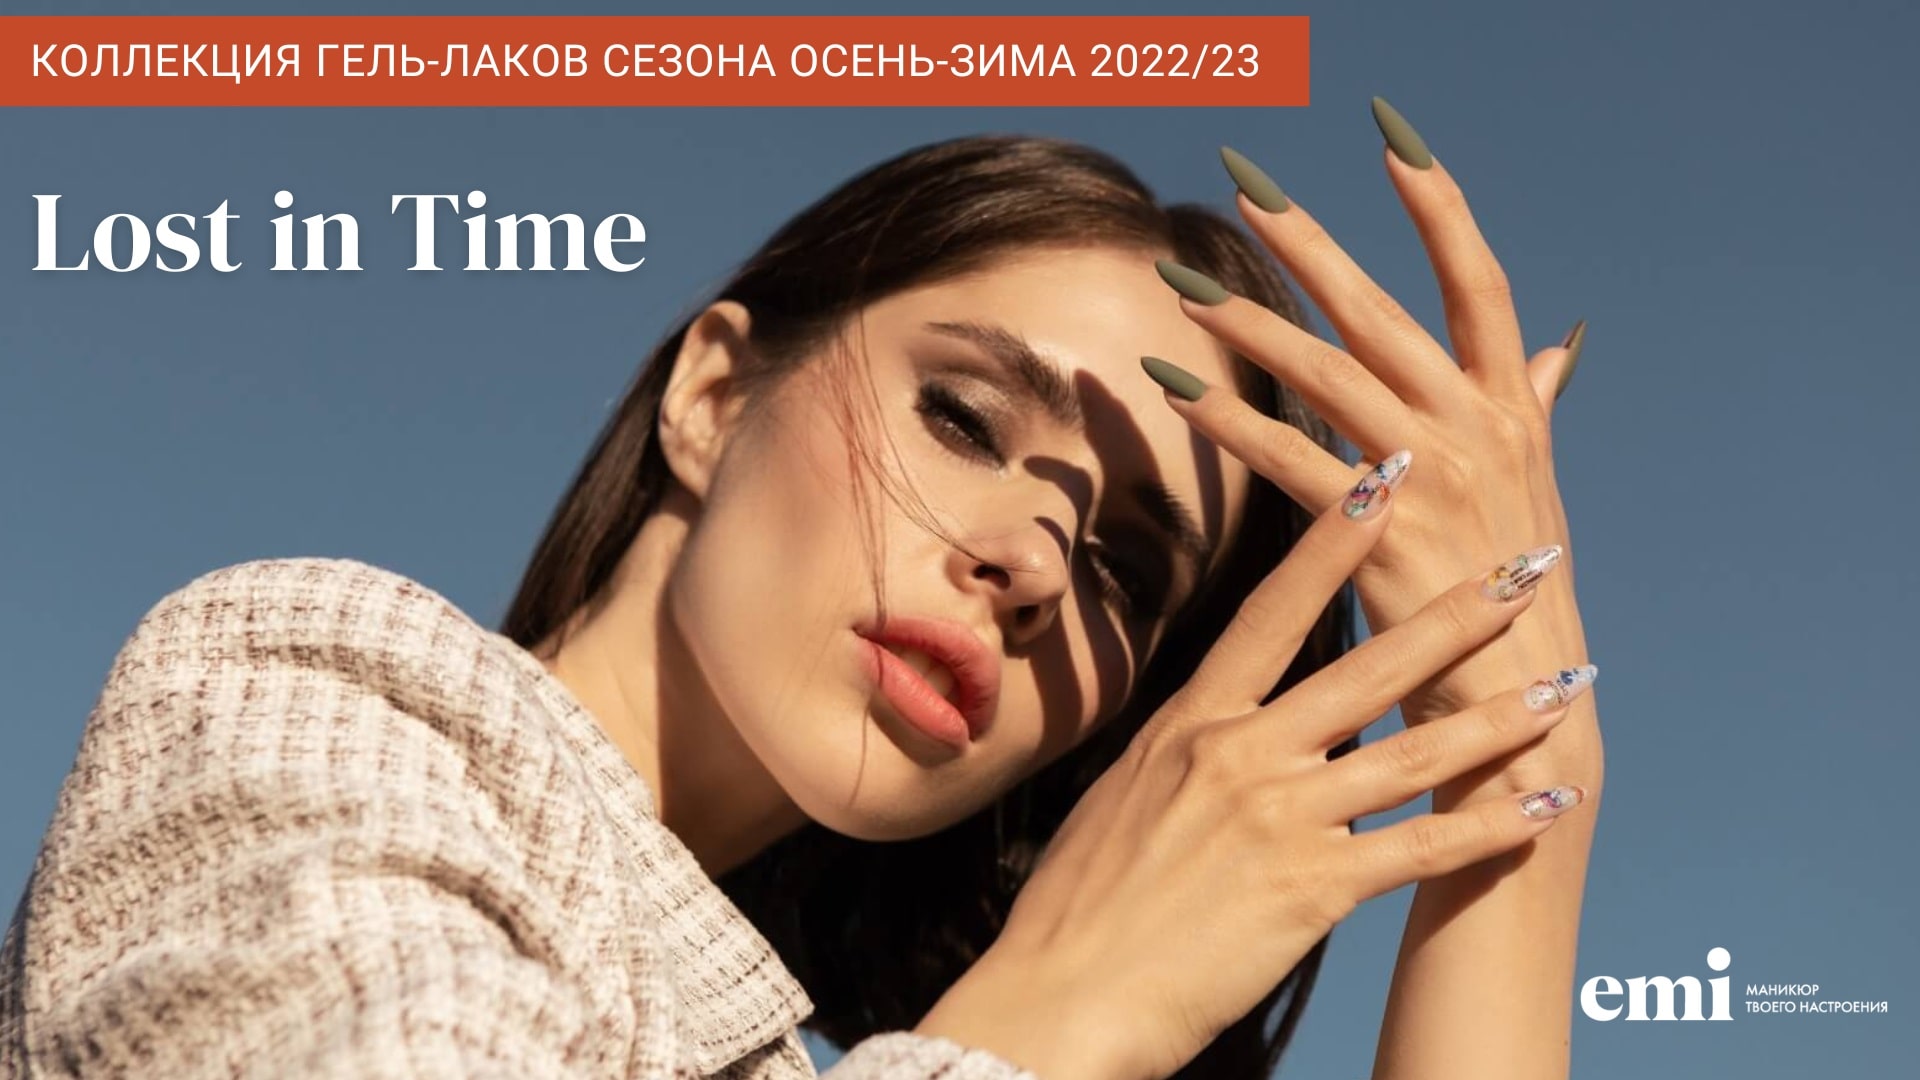 Коллекция Lost in Time сезона осень-зима 2022/23